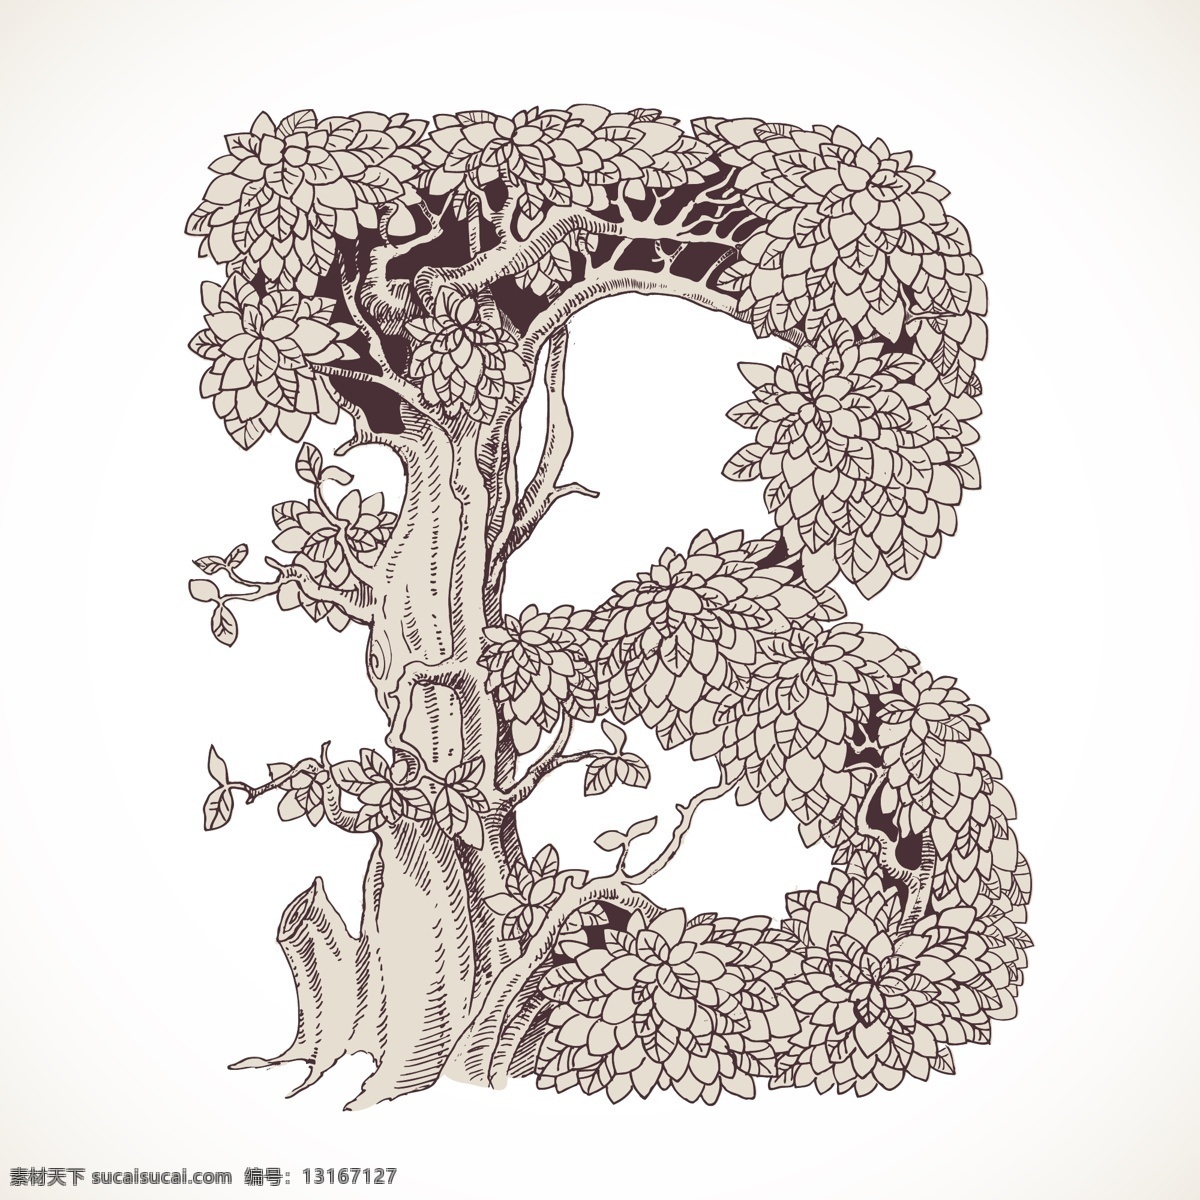 艺术 英文 字母 手绘 树 b 英文字母 艺术字 盆栽 手绘植物 手绘树 园丁 英文形状